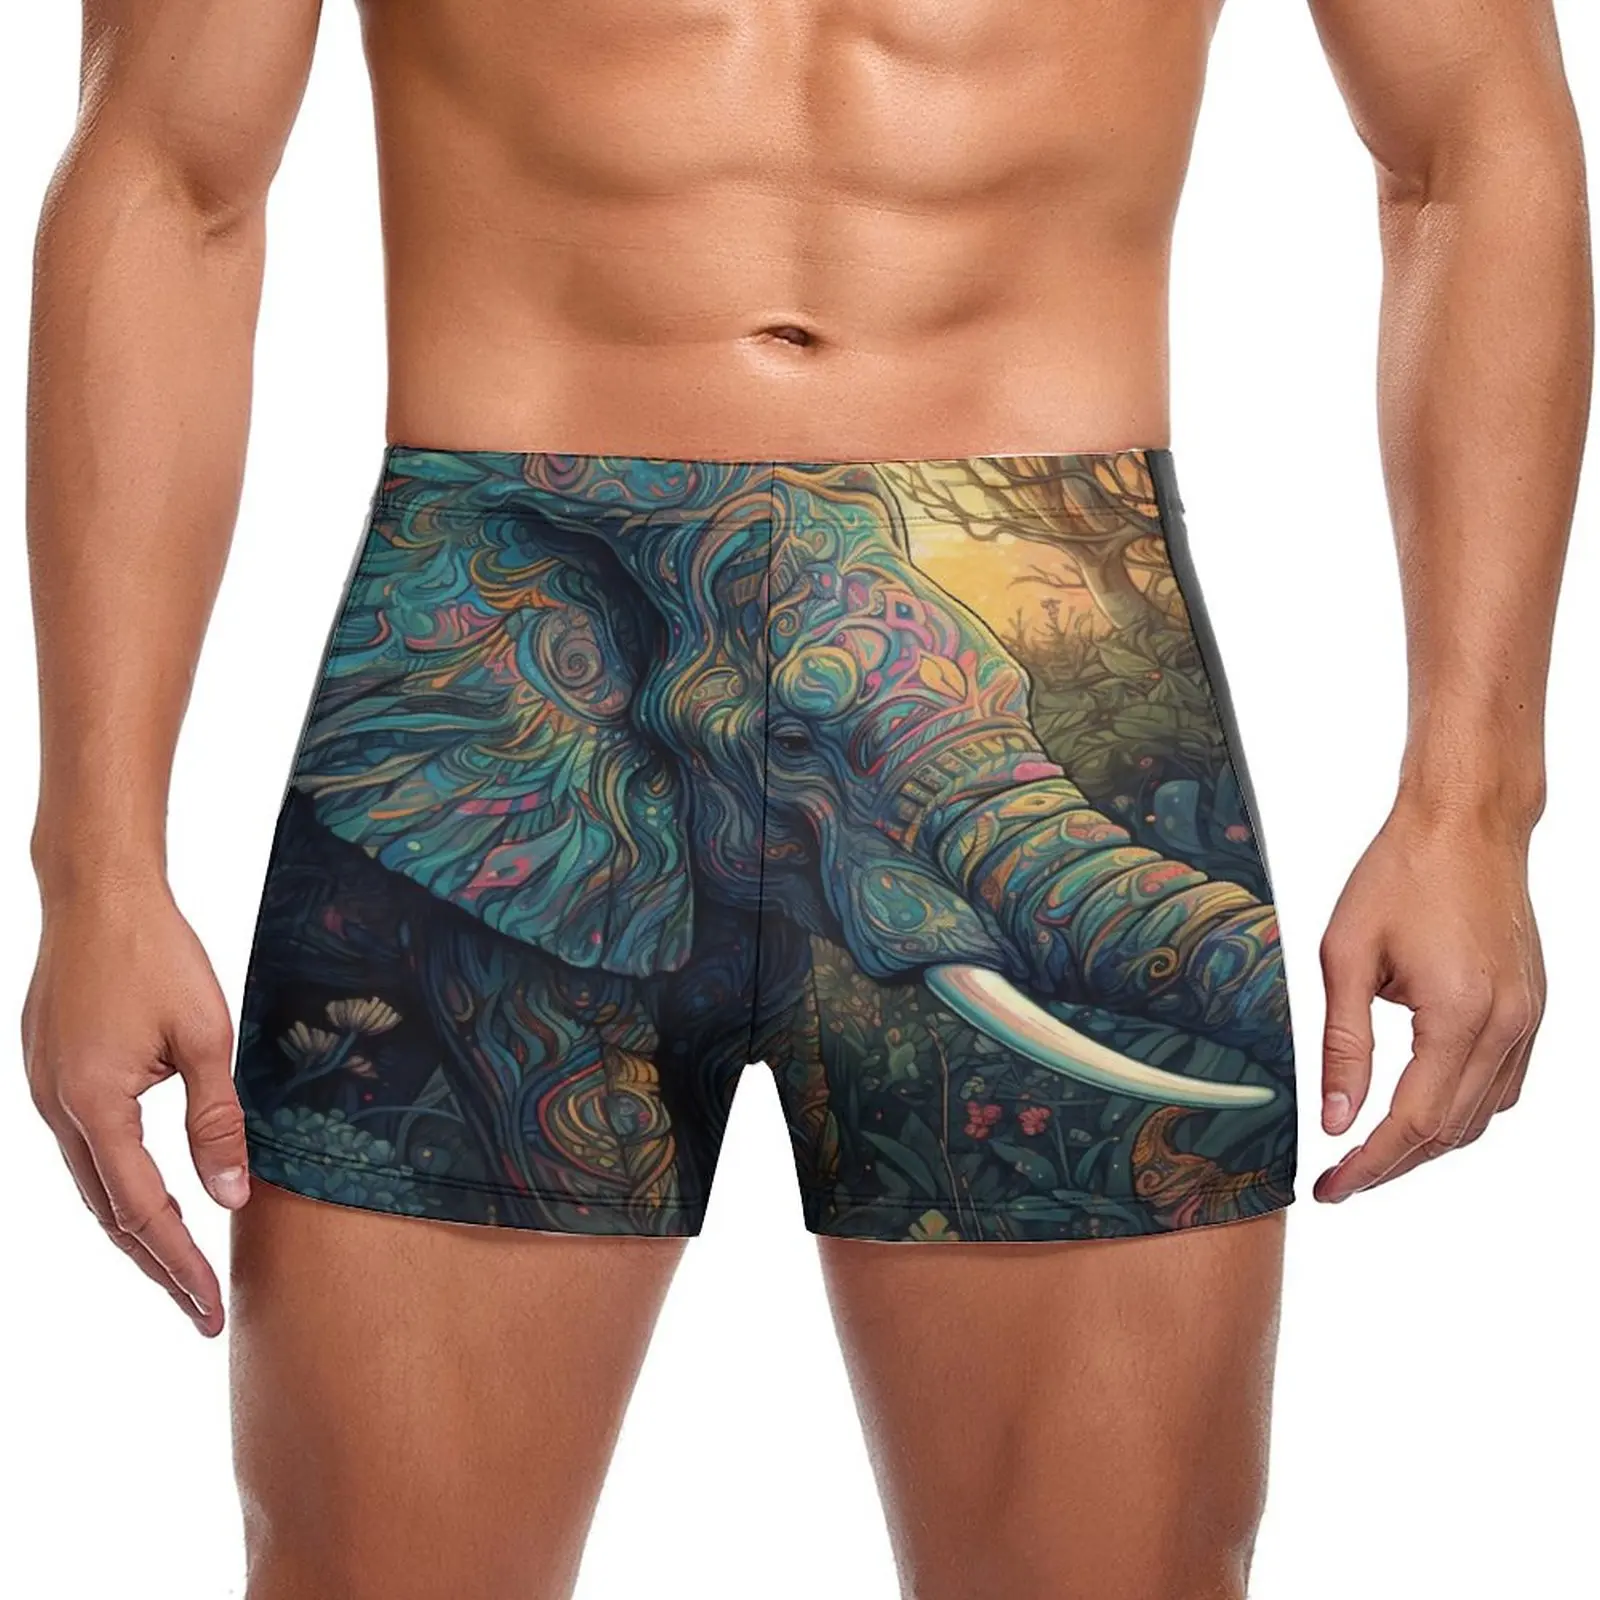 

Плавательные Трусы со слоном, красочные неоновые тренировочные шорты с принтом, прочный мужской купальник